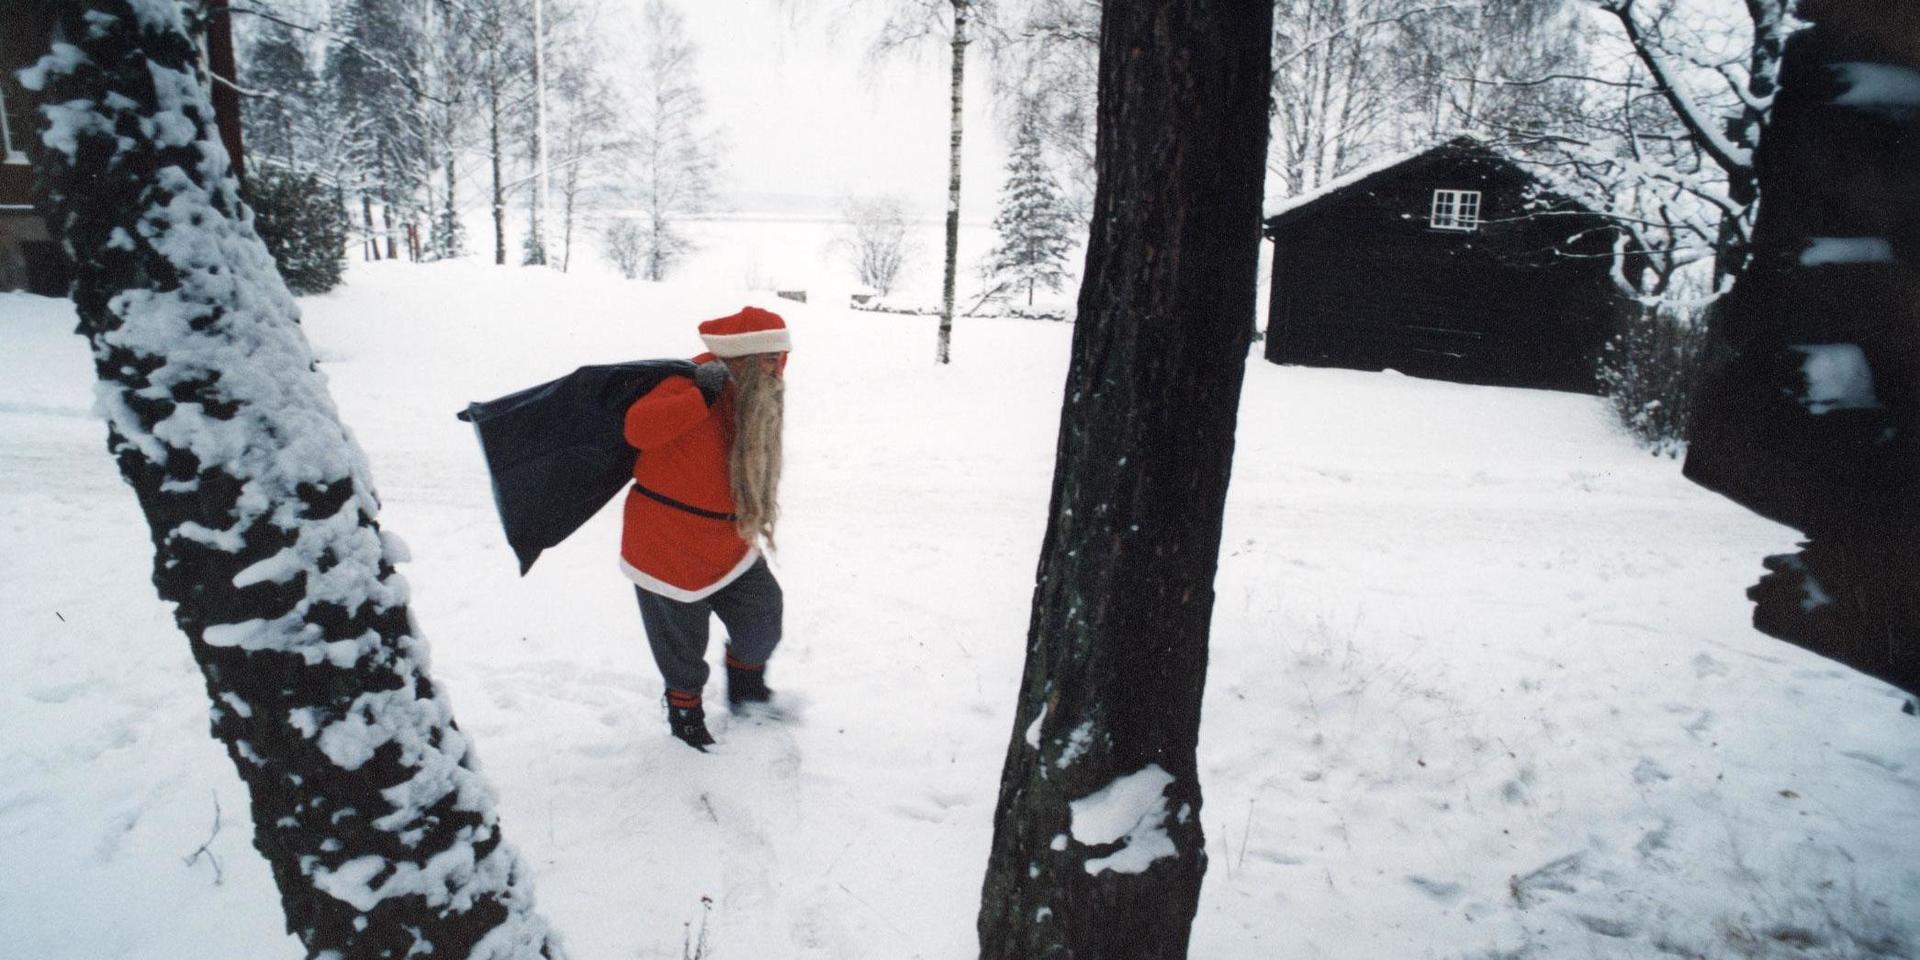 Om tomten ska pulsa i snö på julafton får han lämna västkusten för Lappland, Härjedalen och Jämtland.